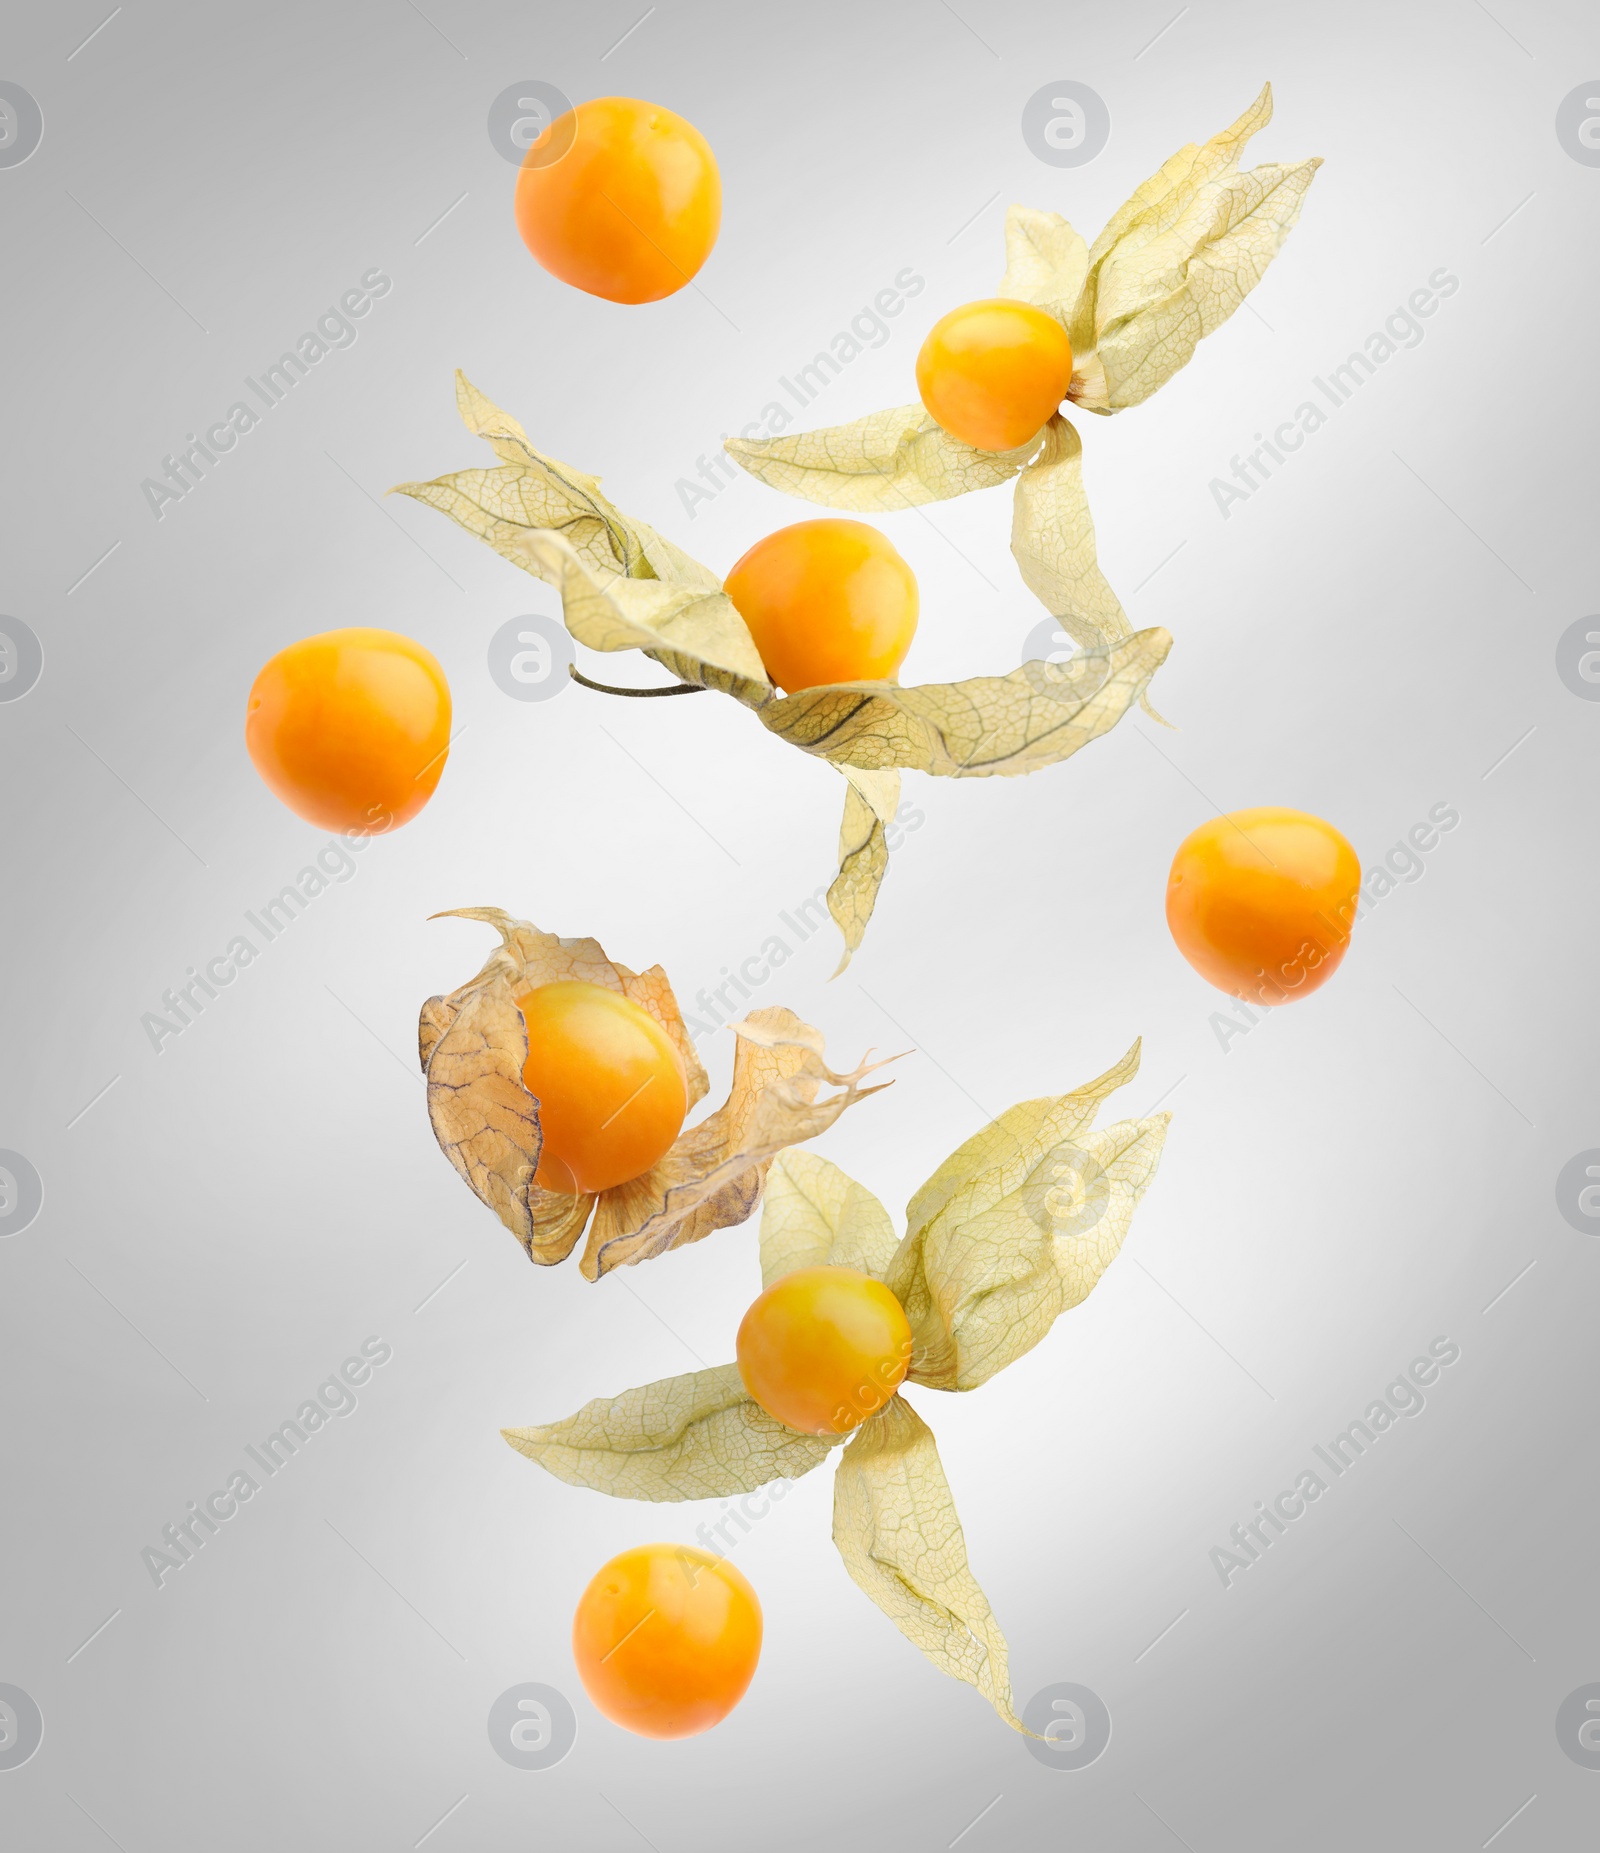 Image of Ripe orange physalis fruits with calyx falling on light grey background